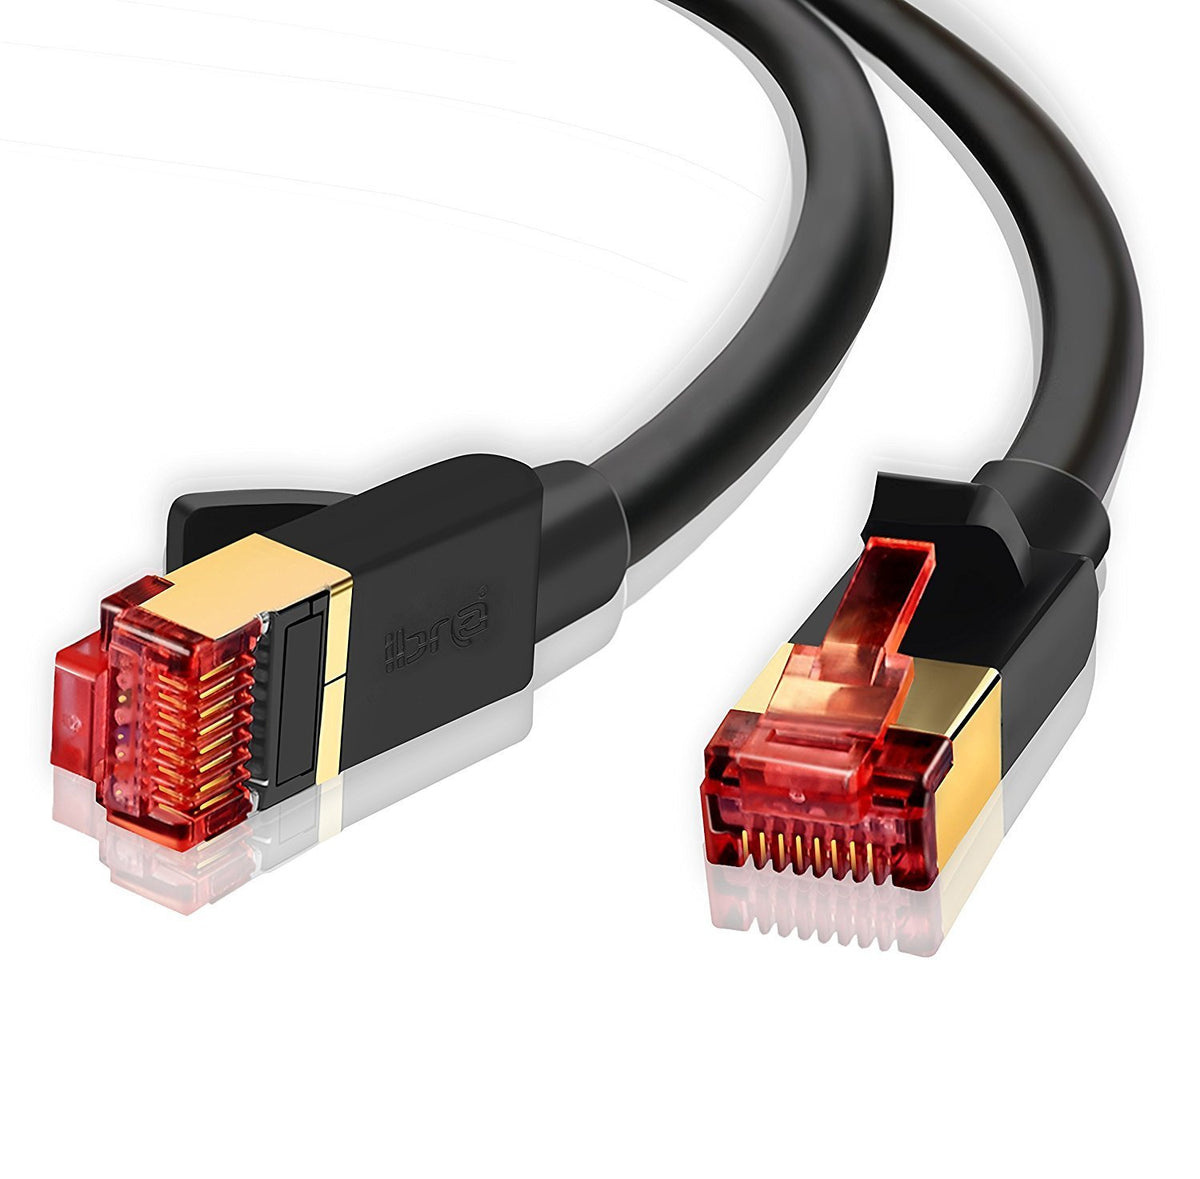 CAT7 Cable Ethernet De Alta Velocidad 10Gbps RJ45 De Red LAN CAT 7 Internet  Para Router De PC